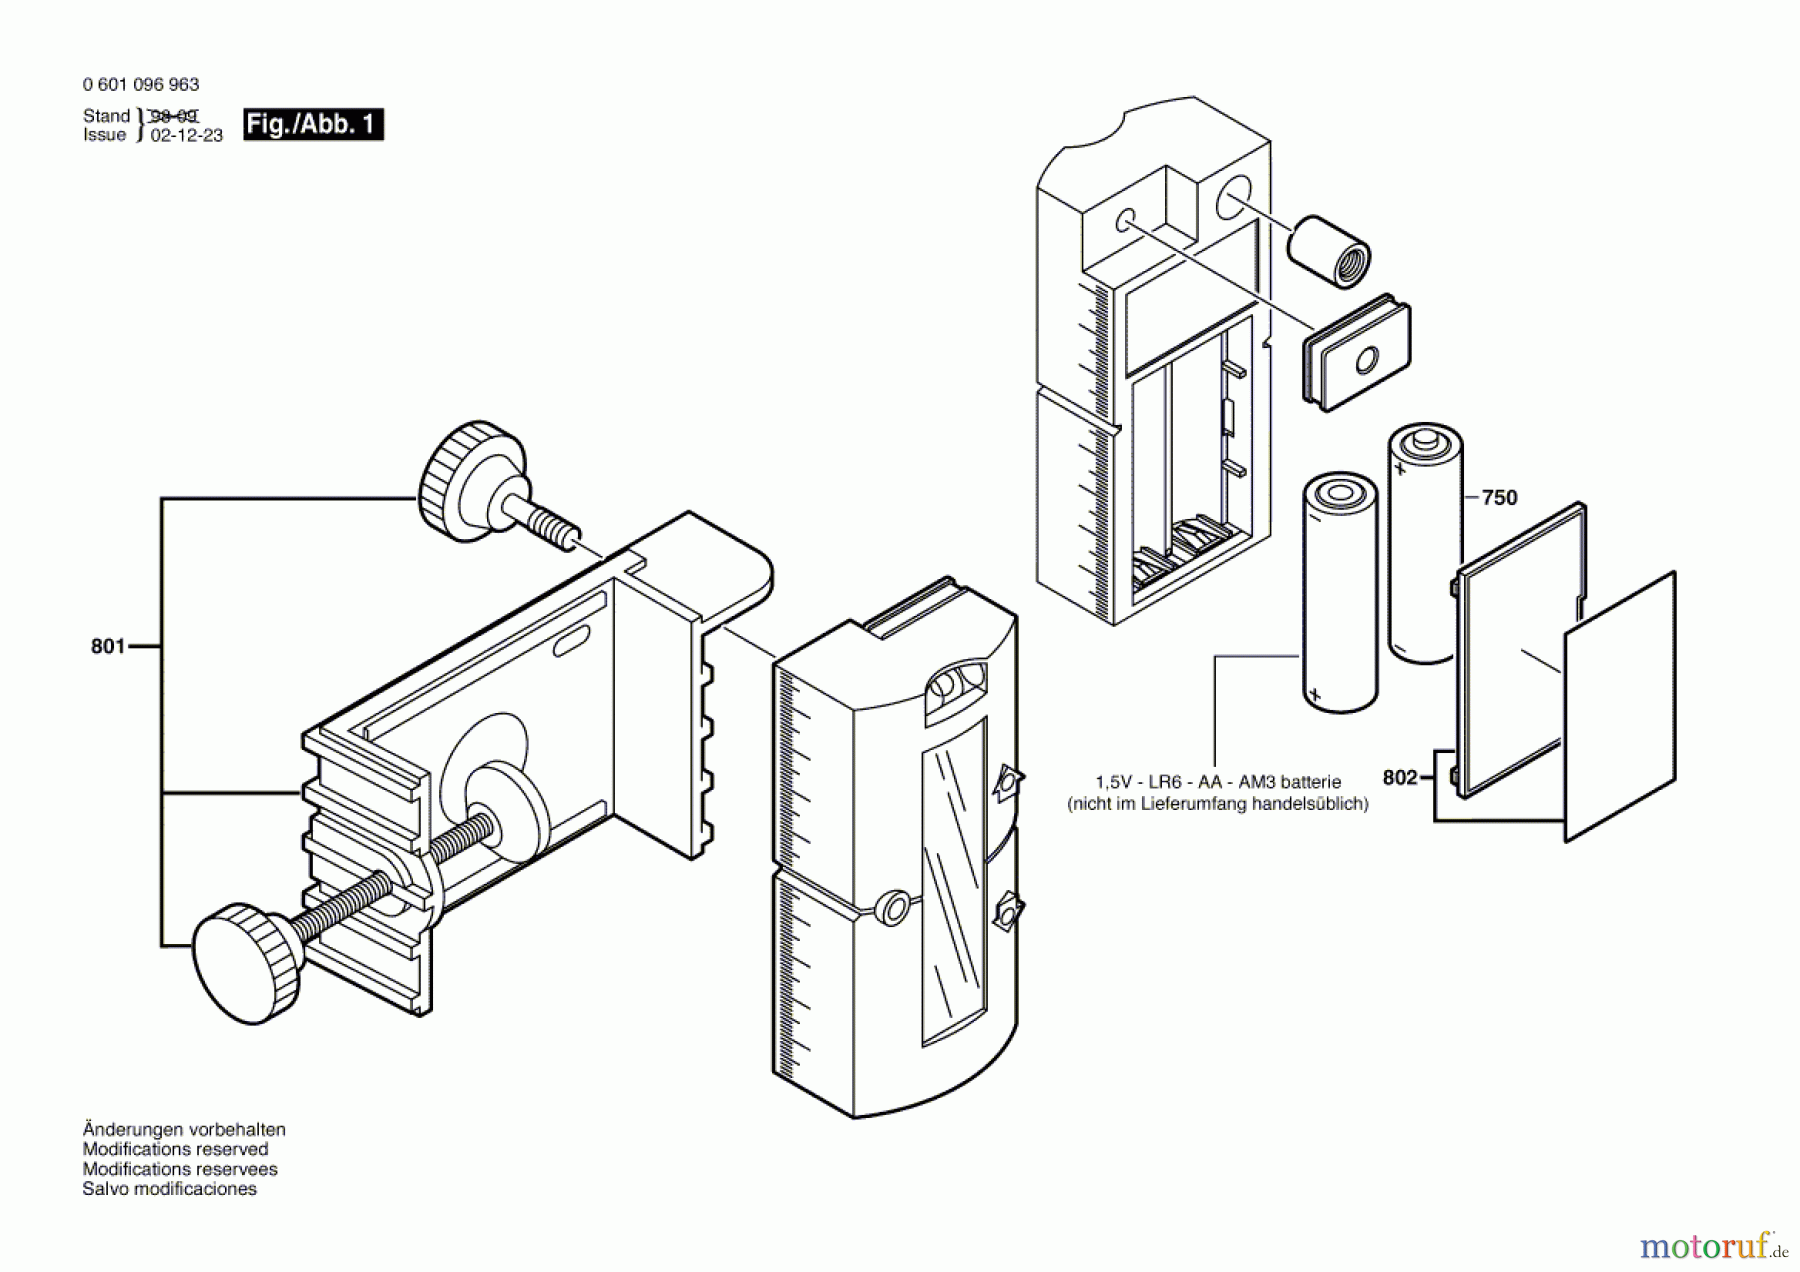  Bosch Werkzeug Lichtempfänger BLE 100 Seite 1